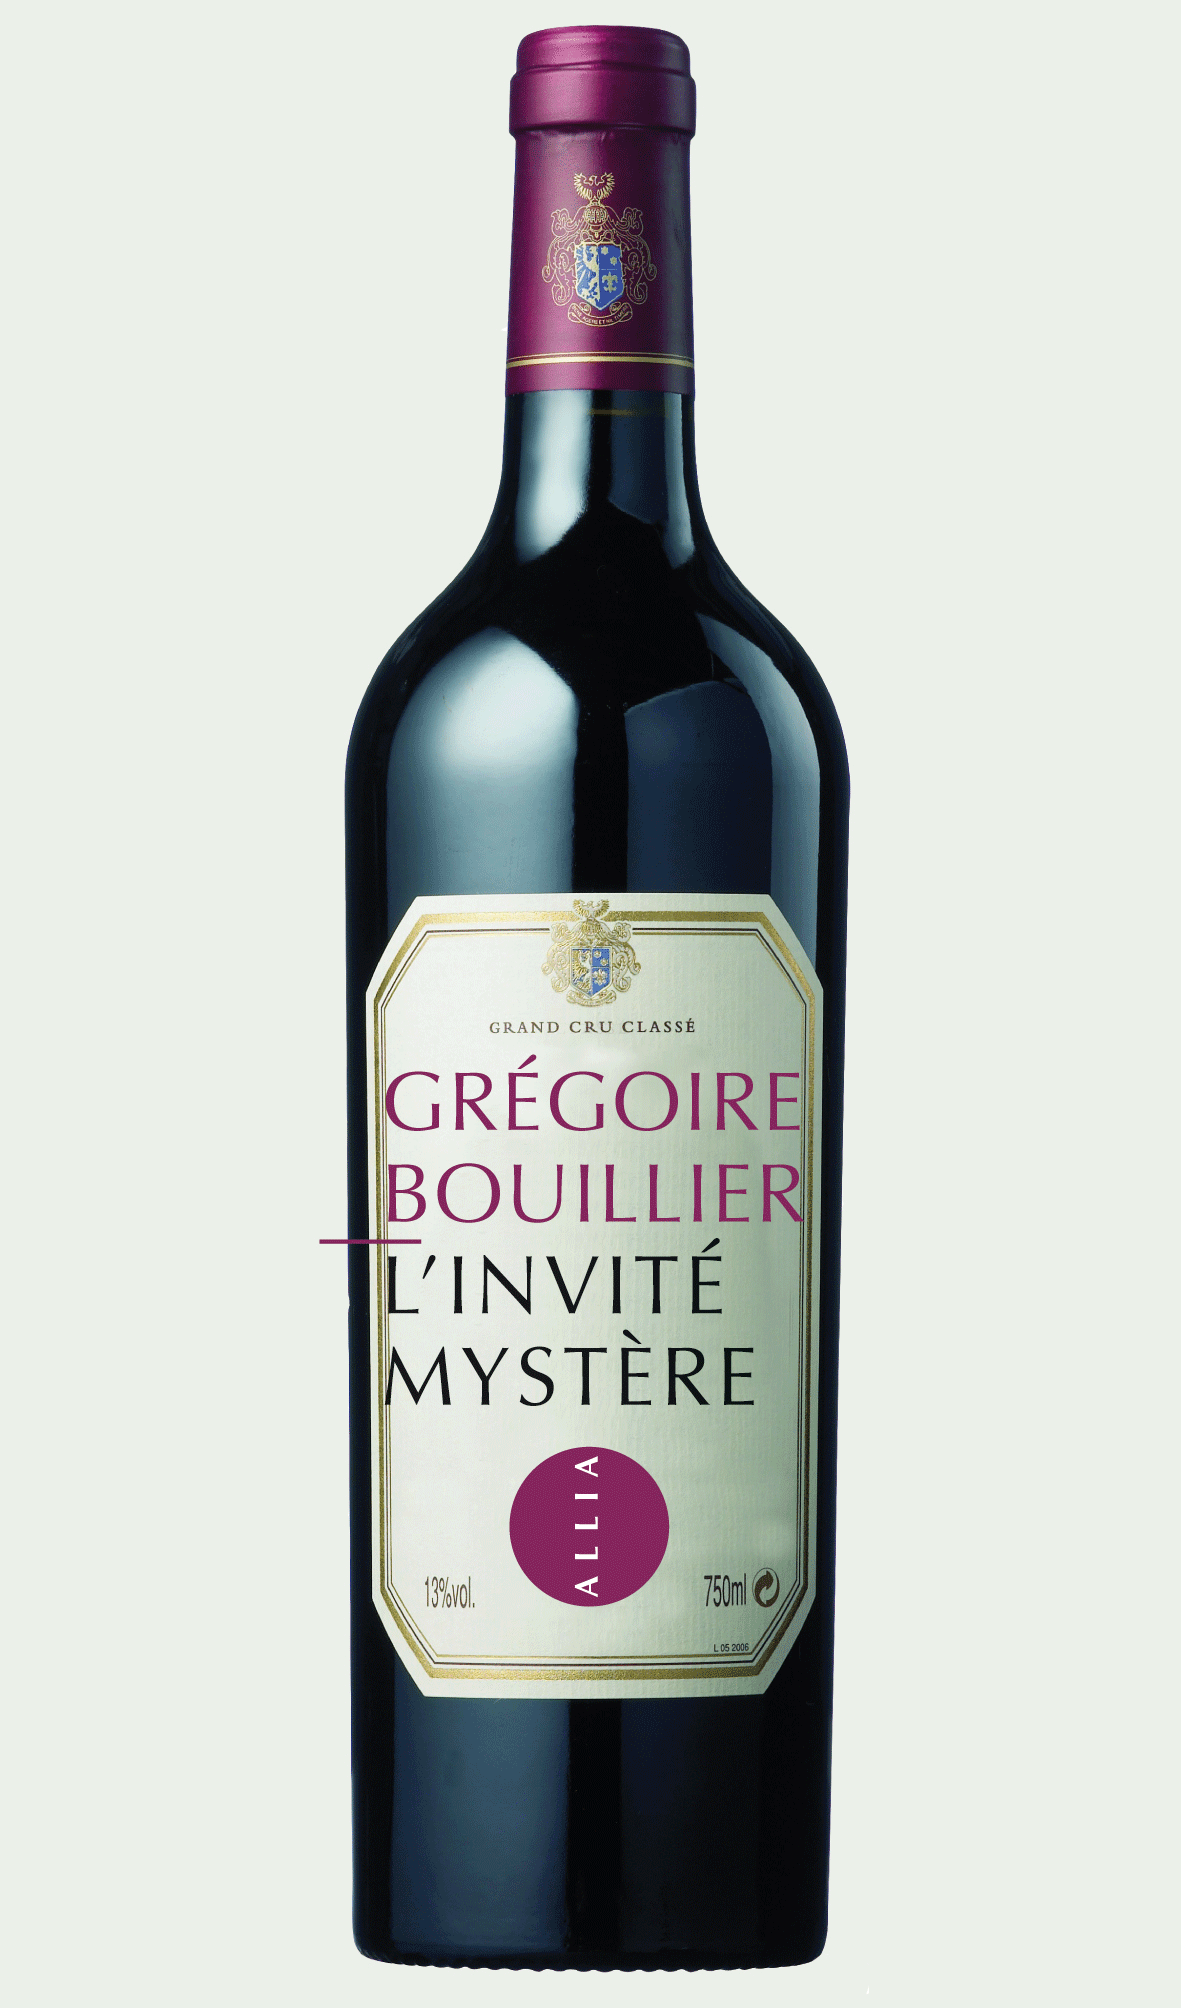 L’Invité mystère - Grégoire Bouillier